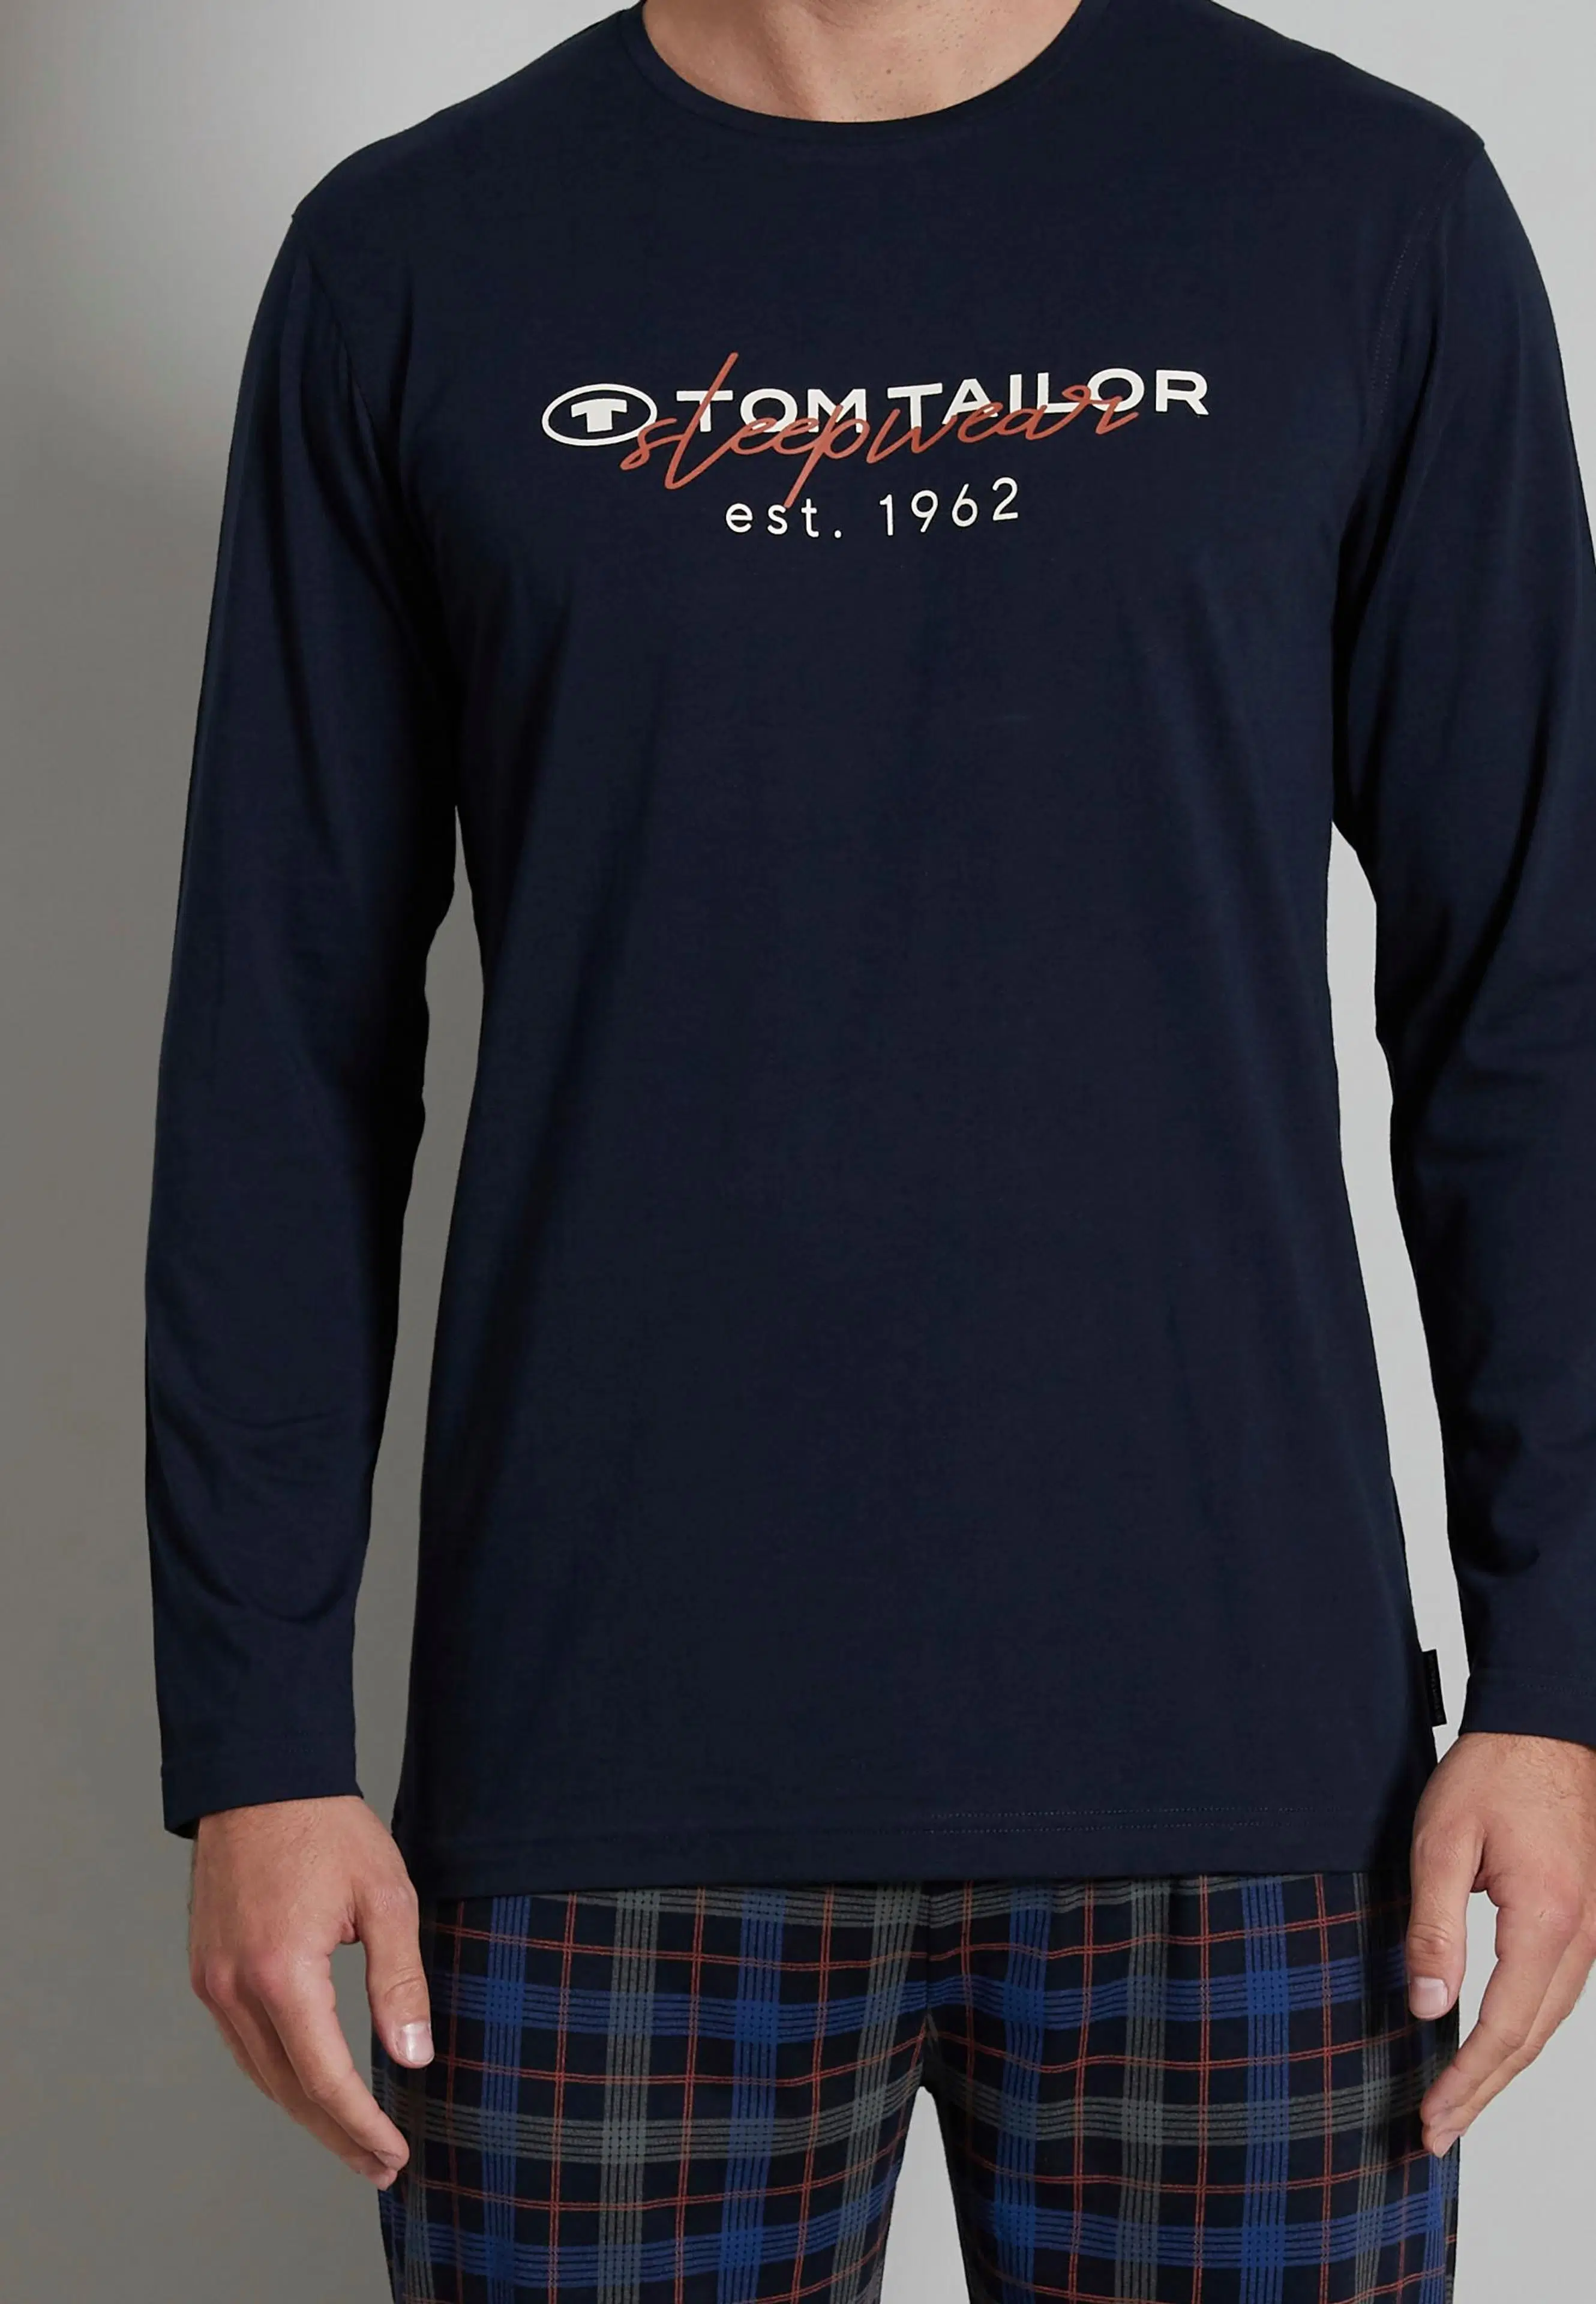 Tom Tailor pyjama